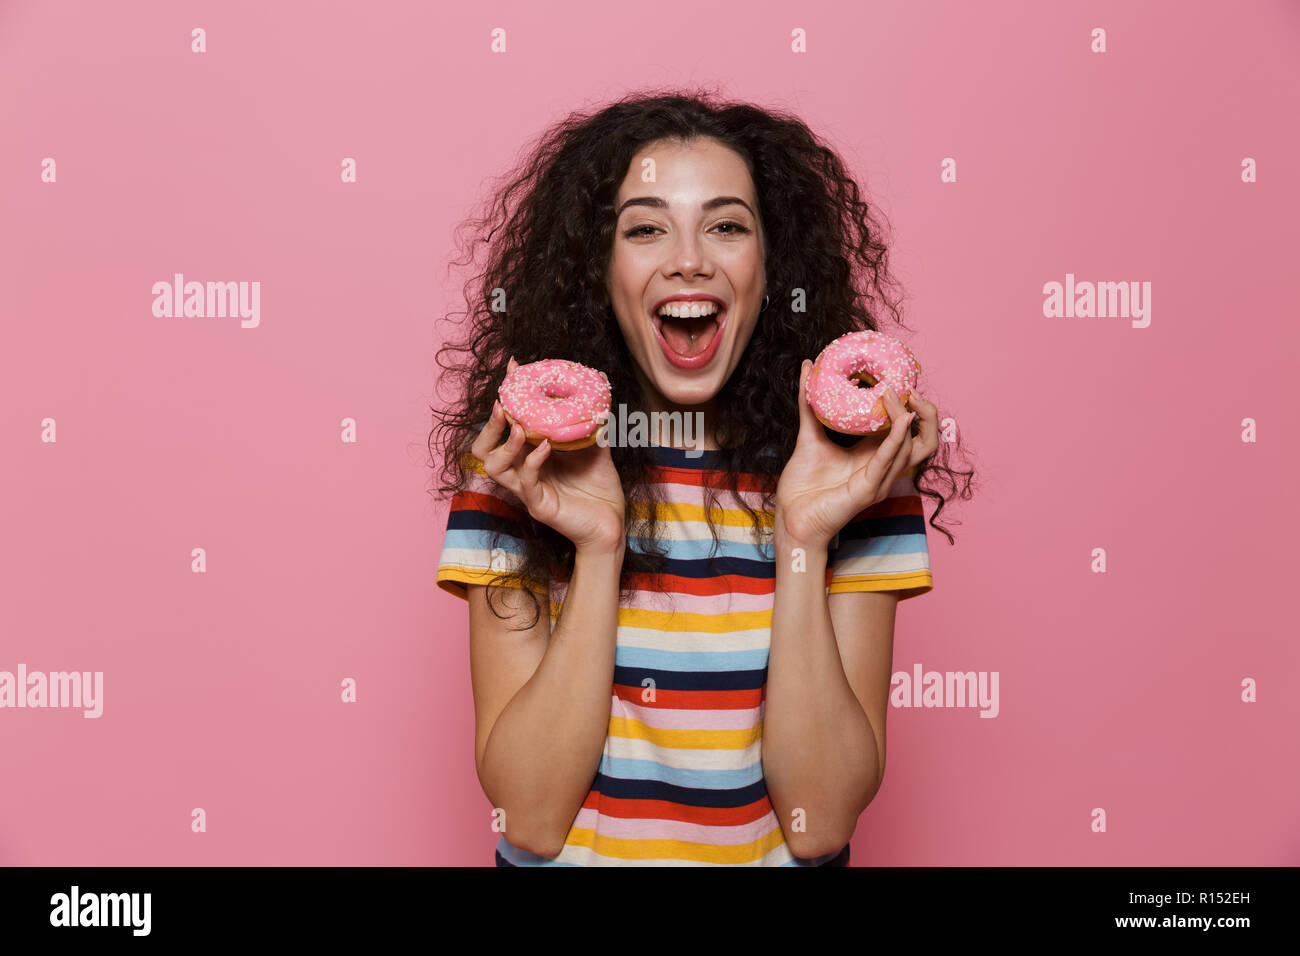 Photo de femme joyeuse 20s avec les cheveux bouclés s'amusant et holding donuts plus isolé sur fond rose Banque D'Images